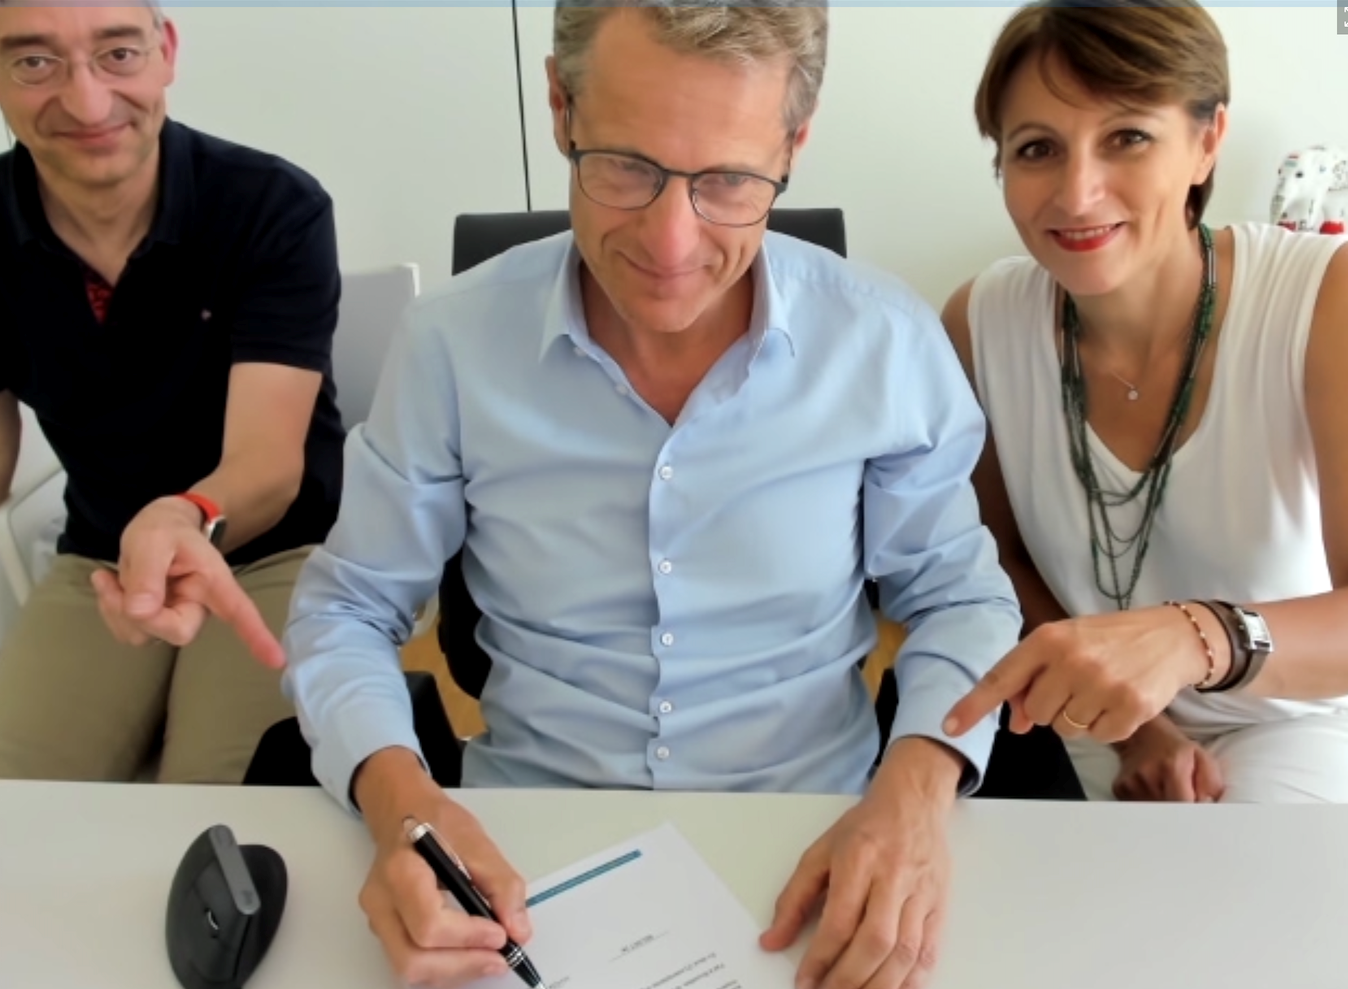 Claude Demuth ondertekent samenwerkingsovereenkomst voor LU-CIX vergezeld van Michel Lanners en Frédérique Ulrich